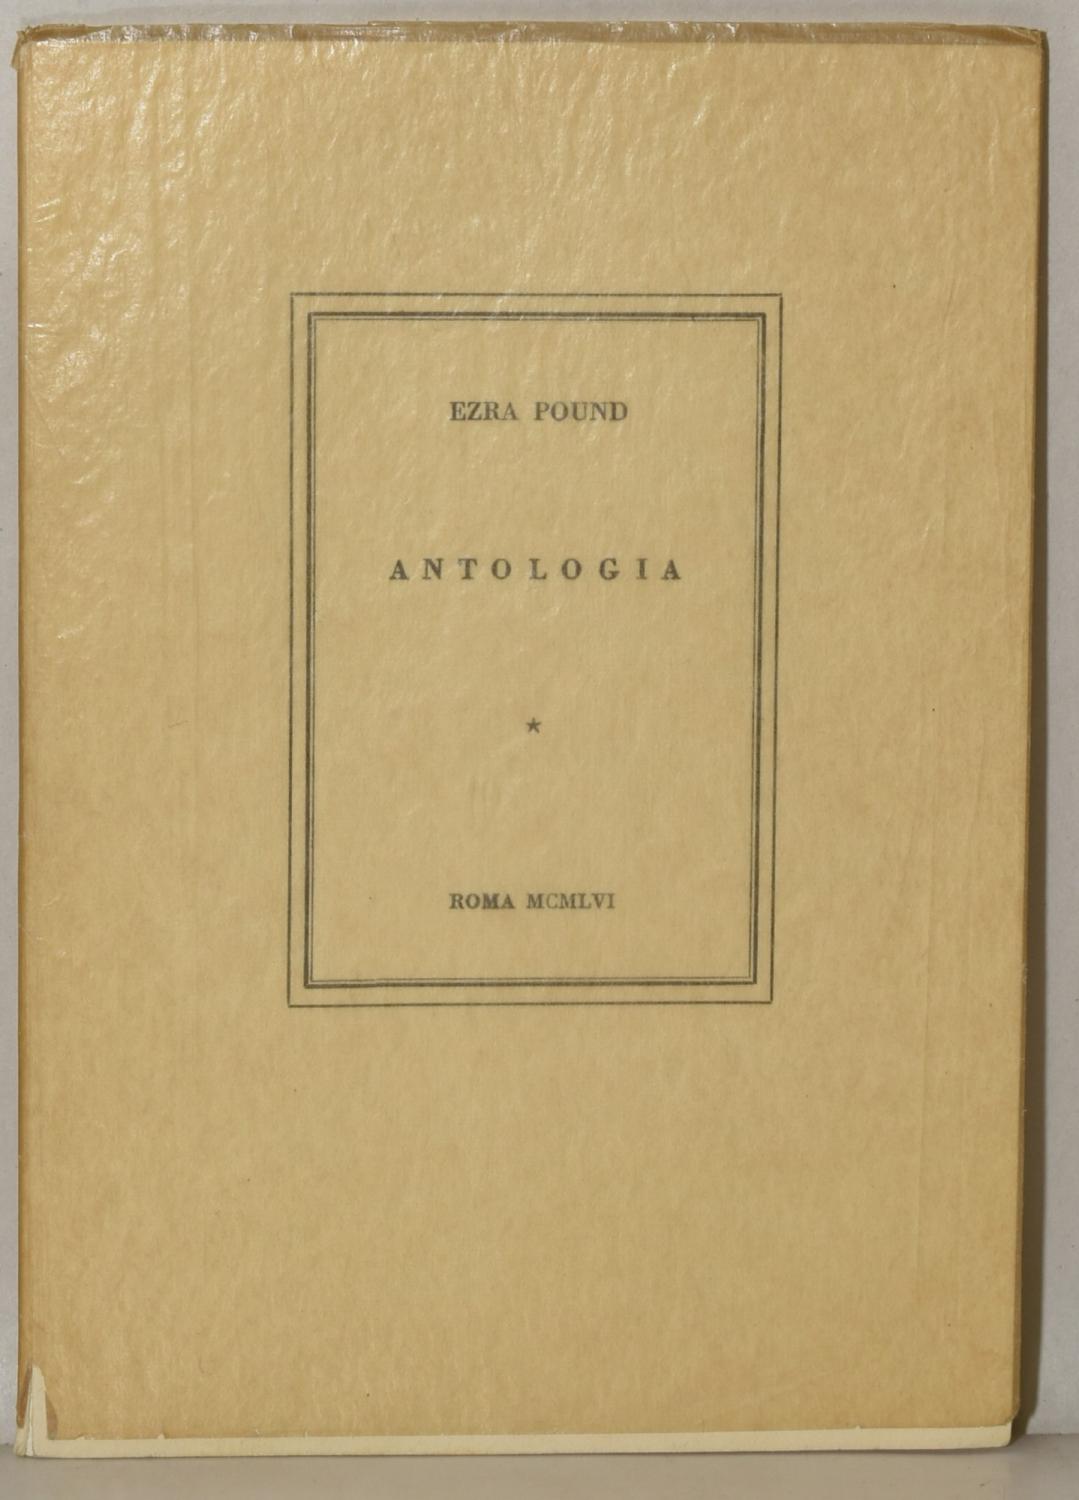 ANTOLOGIA - Ezra Pound